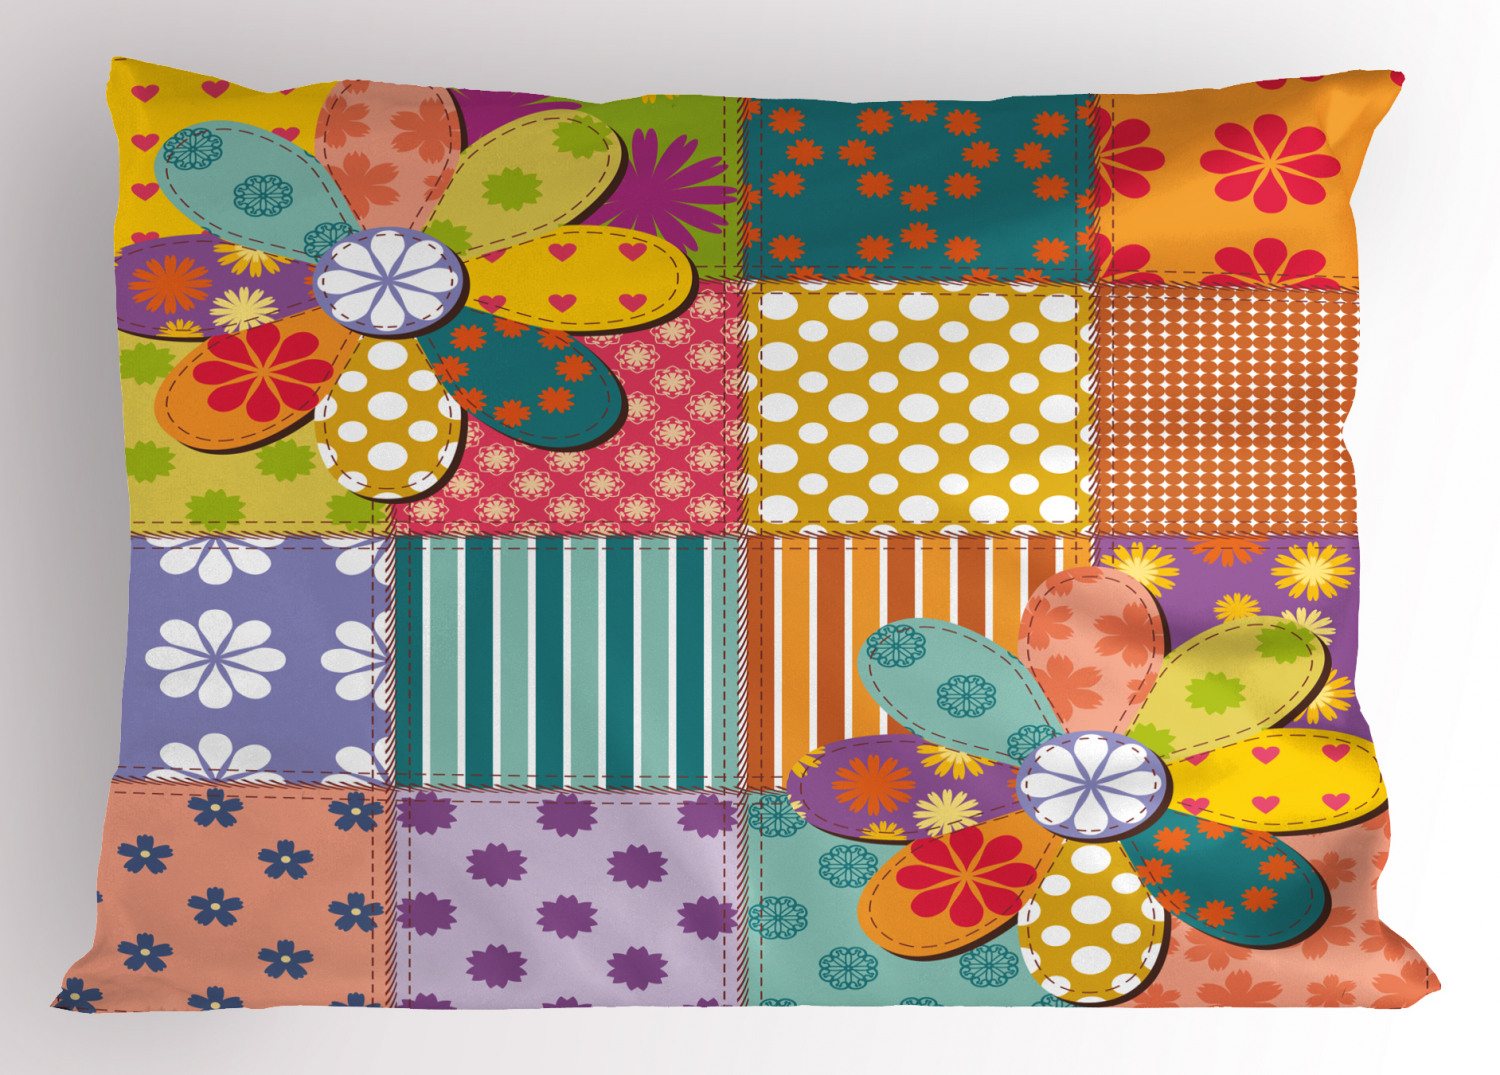 Details about   Vivid Colorful Pillow Sham Decorative Pillowcase 3 Sizes Bedroom Decoration 